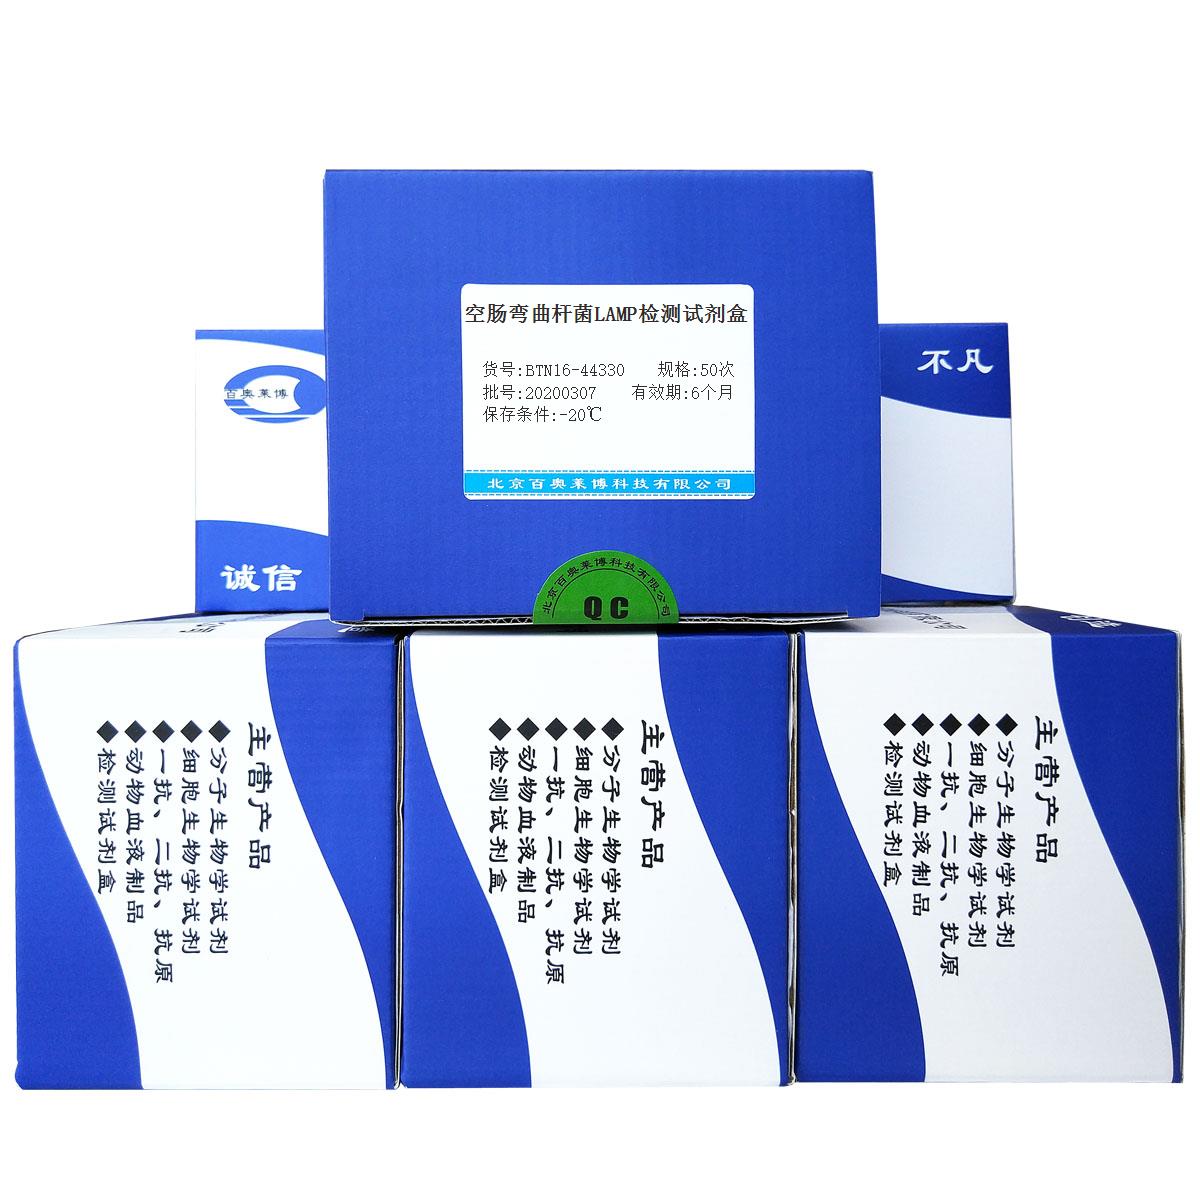 空肠弯曲杆菌LAMP检测试剂盒北京现货